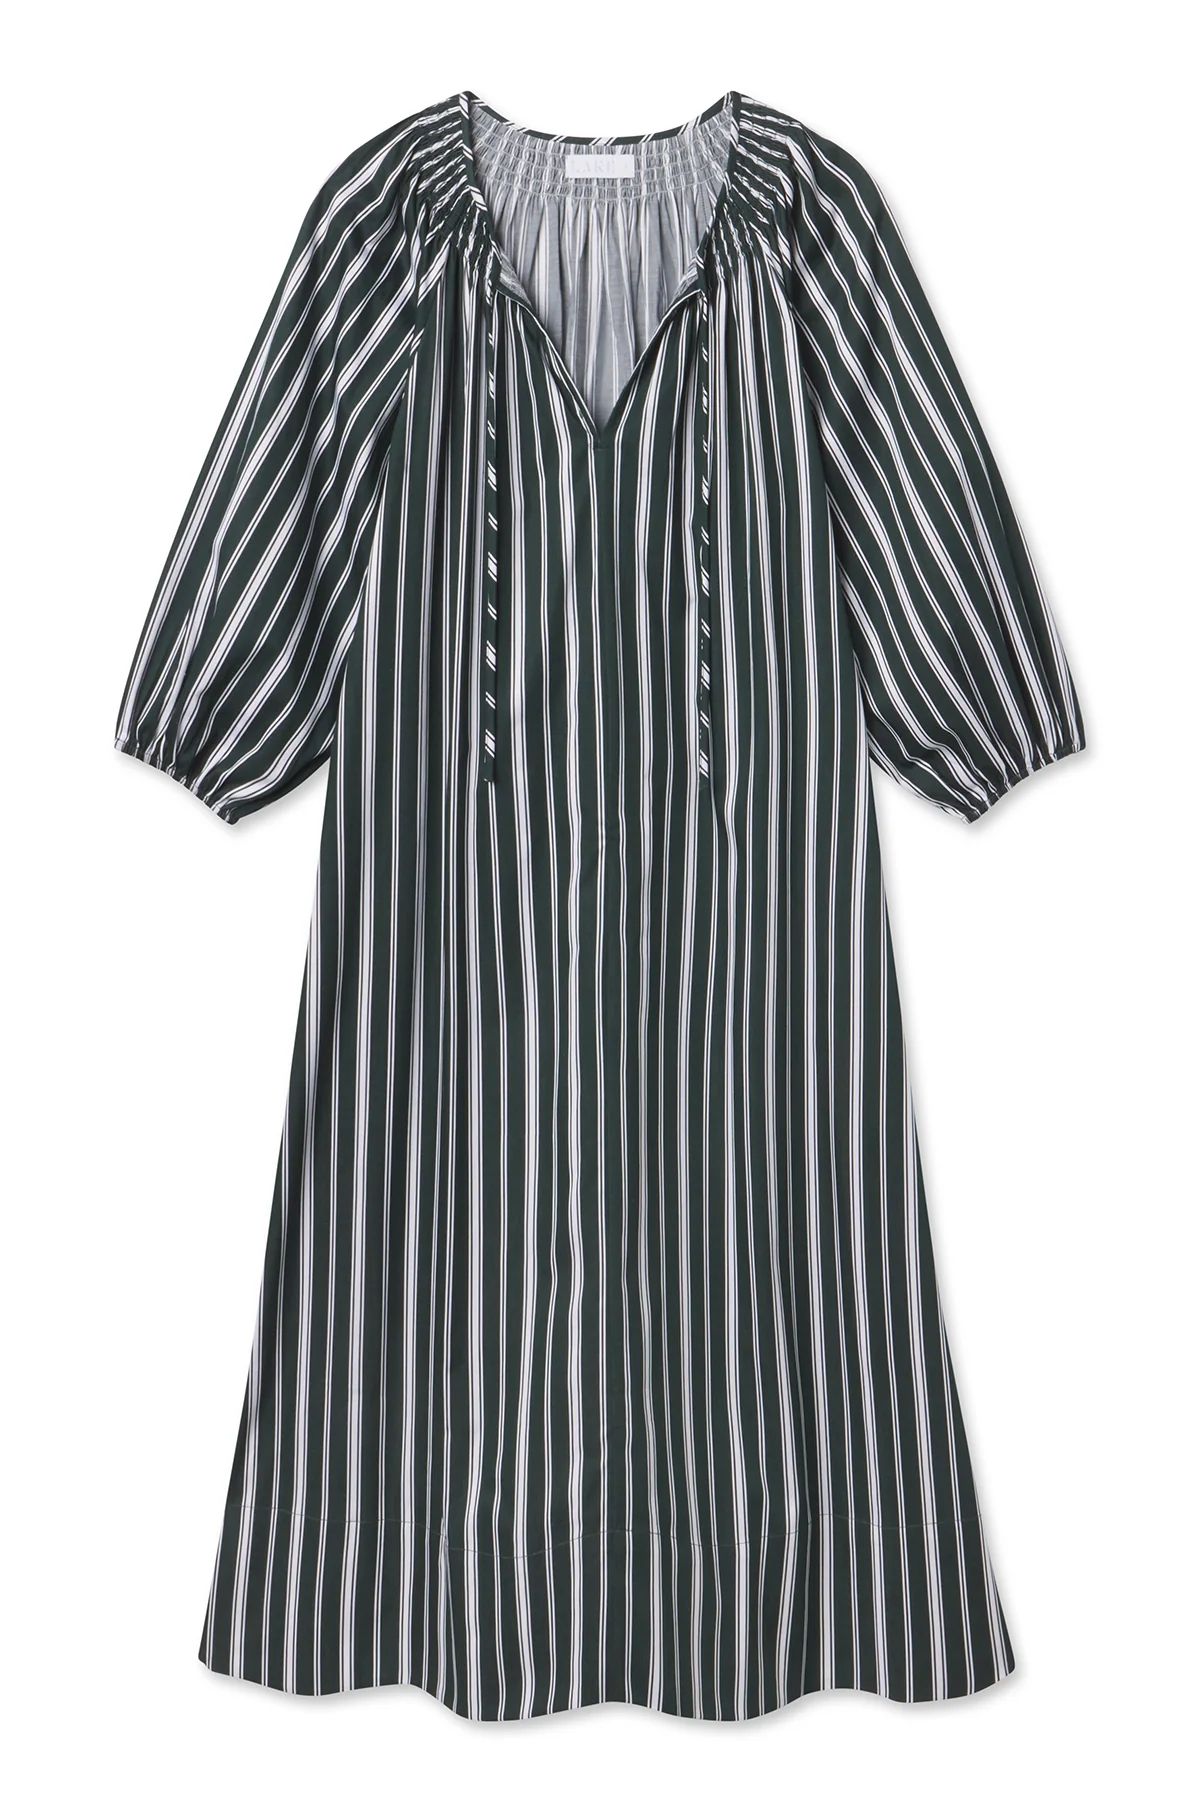 Hammock Midi Dress in Conifer Stripe | Lake Pajamas